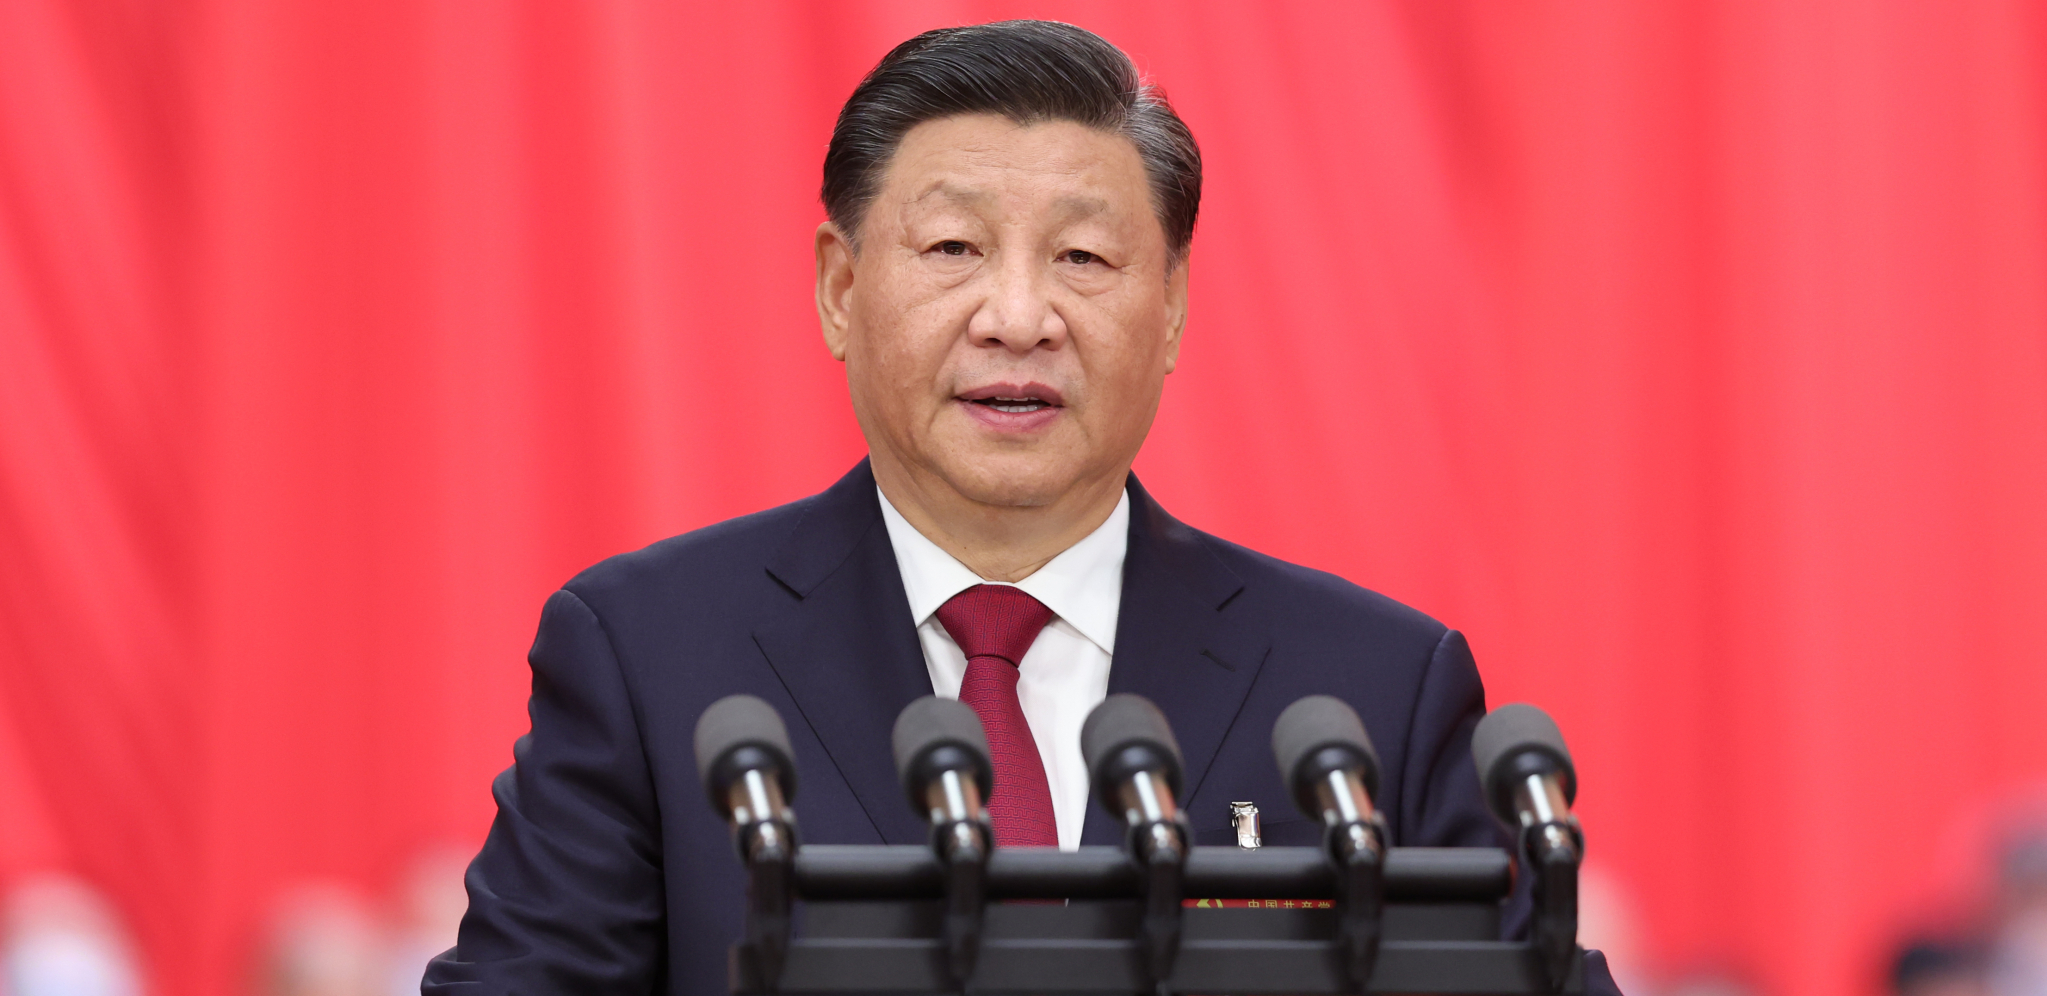 SIJEV POZIV SVETU Objavljena poruka kineskog predsednika: Dosta je bilo!